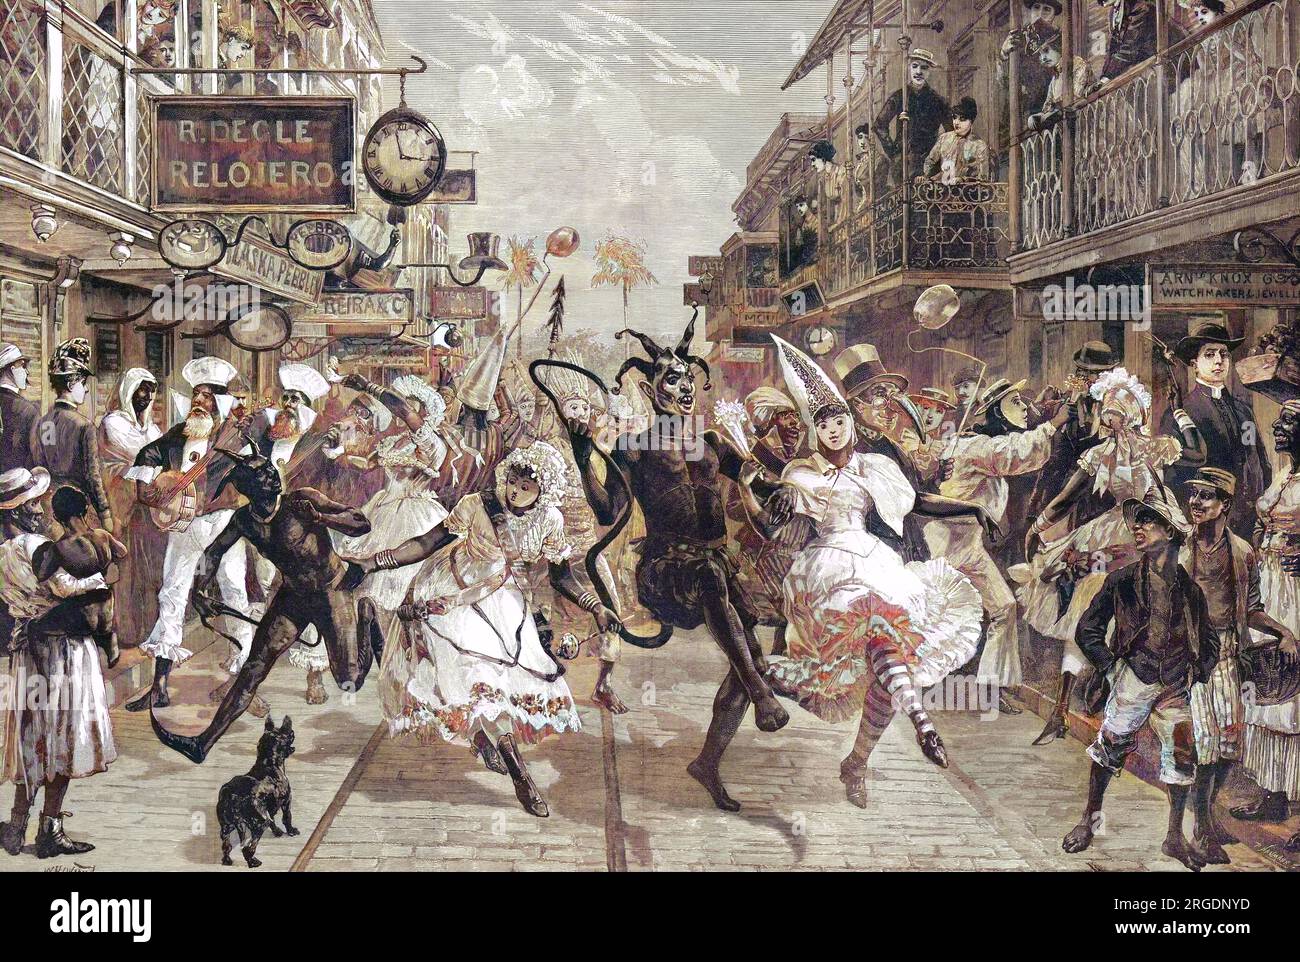 Der Karneval im Hafen von Spanien, Trinidad, 1888. Die Leute kleiden sich schick durch die Straße, manche spielen Banjos, andere wühlen, was wie Blasen auf Stöcken aussieht. Eher konservativ gekleidete Leute beobachten vom Bürgersteig und von Balkonen über der Straße aus. Stockfoto